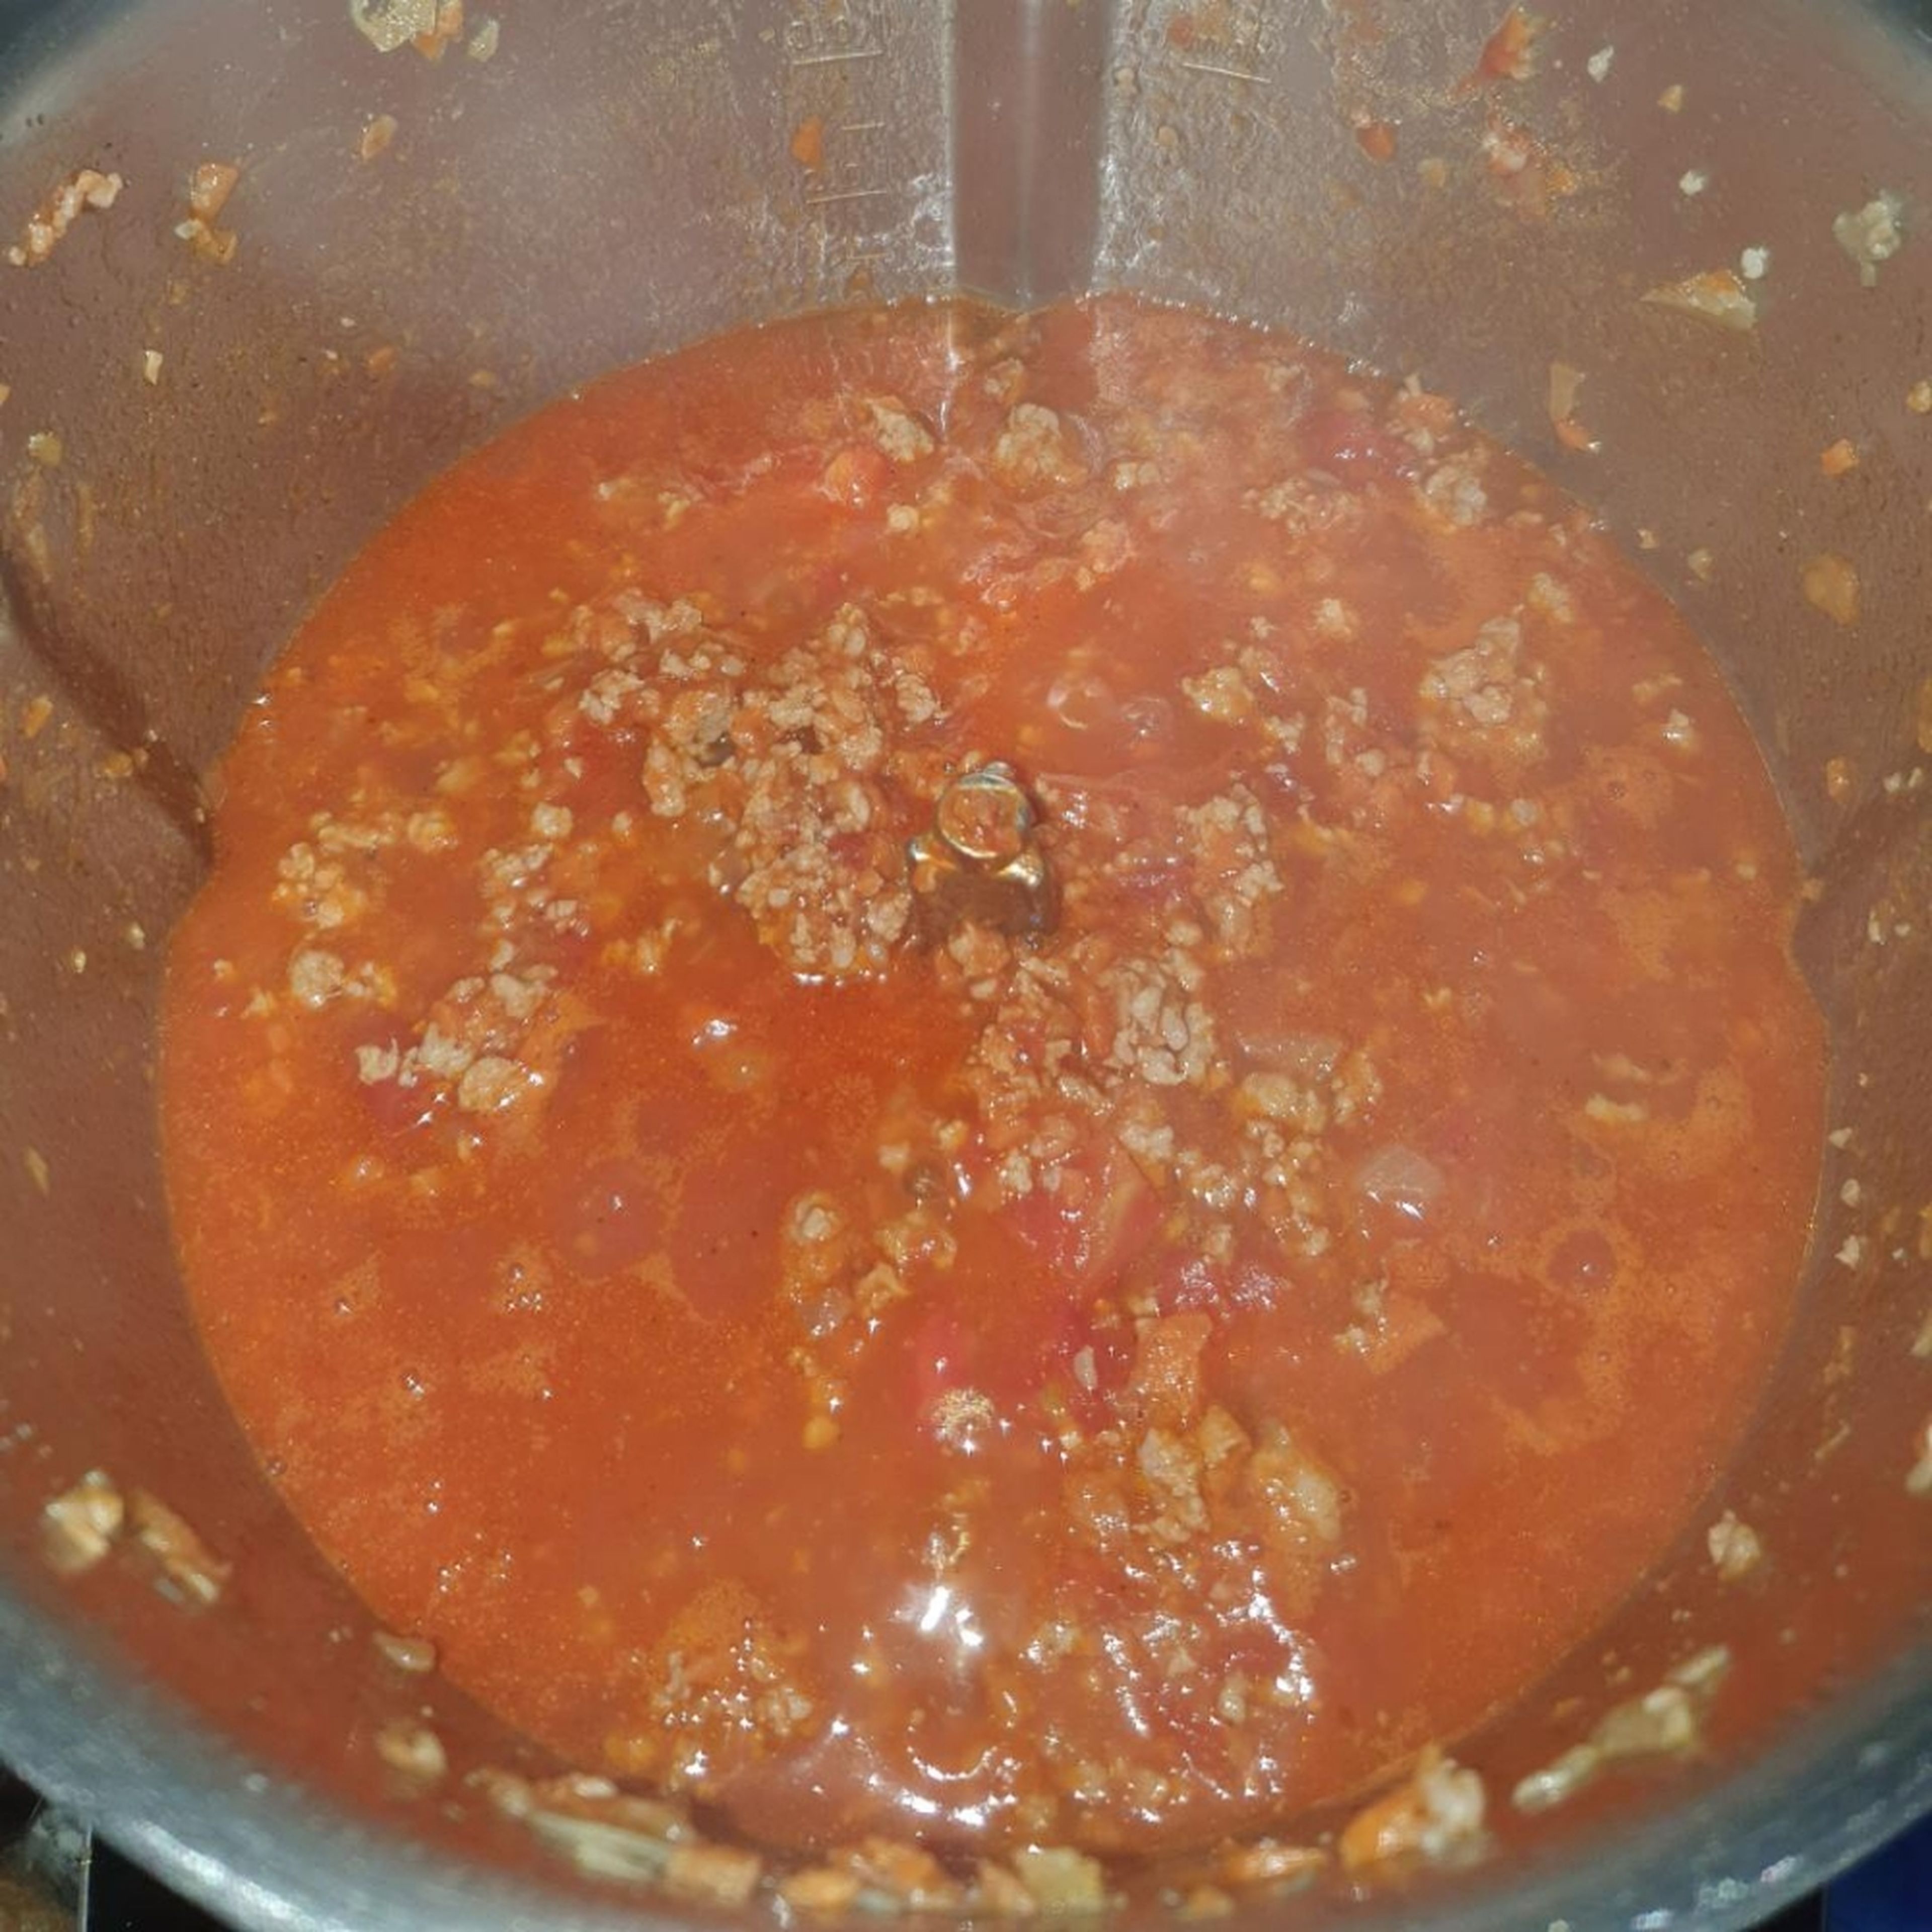 Tomatenmark und gehackte Tomaten unterrühren, mit Salz, Pfeffer und Zucker würzen und ca. 2 Min. bei geöffnetem Deckel mit anbraten (ohne Werkzeug | 160°C | 2 Min.). Immer wieder mit dem Spatel umrühren. Dann mit Gemüsebrühe ablöschen. Auf 120°C stellen bis es aufgekocht ist, dann auf 97°C reduzieren und bei geschlossenem Deckel, ohne Messbecher, ca. 5 Min einkochen lassen (ohne Werkzeug | 97°C | 5 Min.). 1-2 Mal mit dem Spatel umrühren.